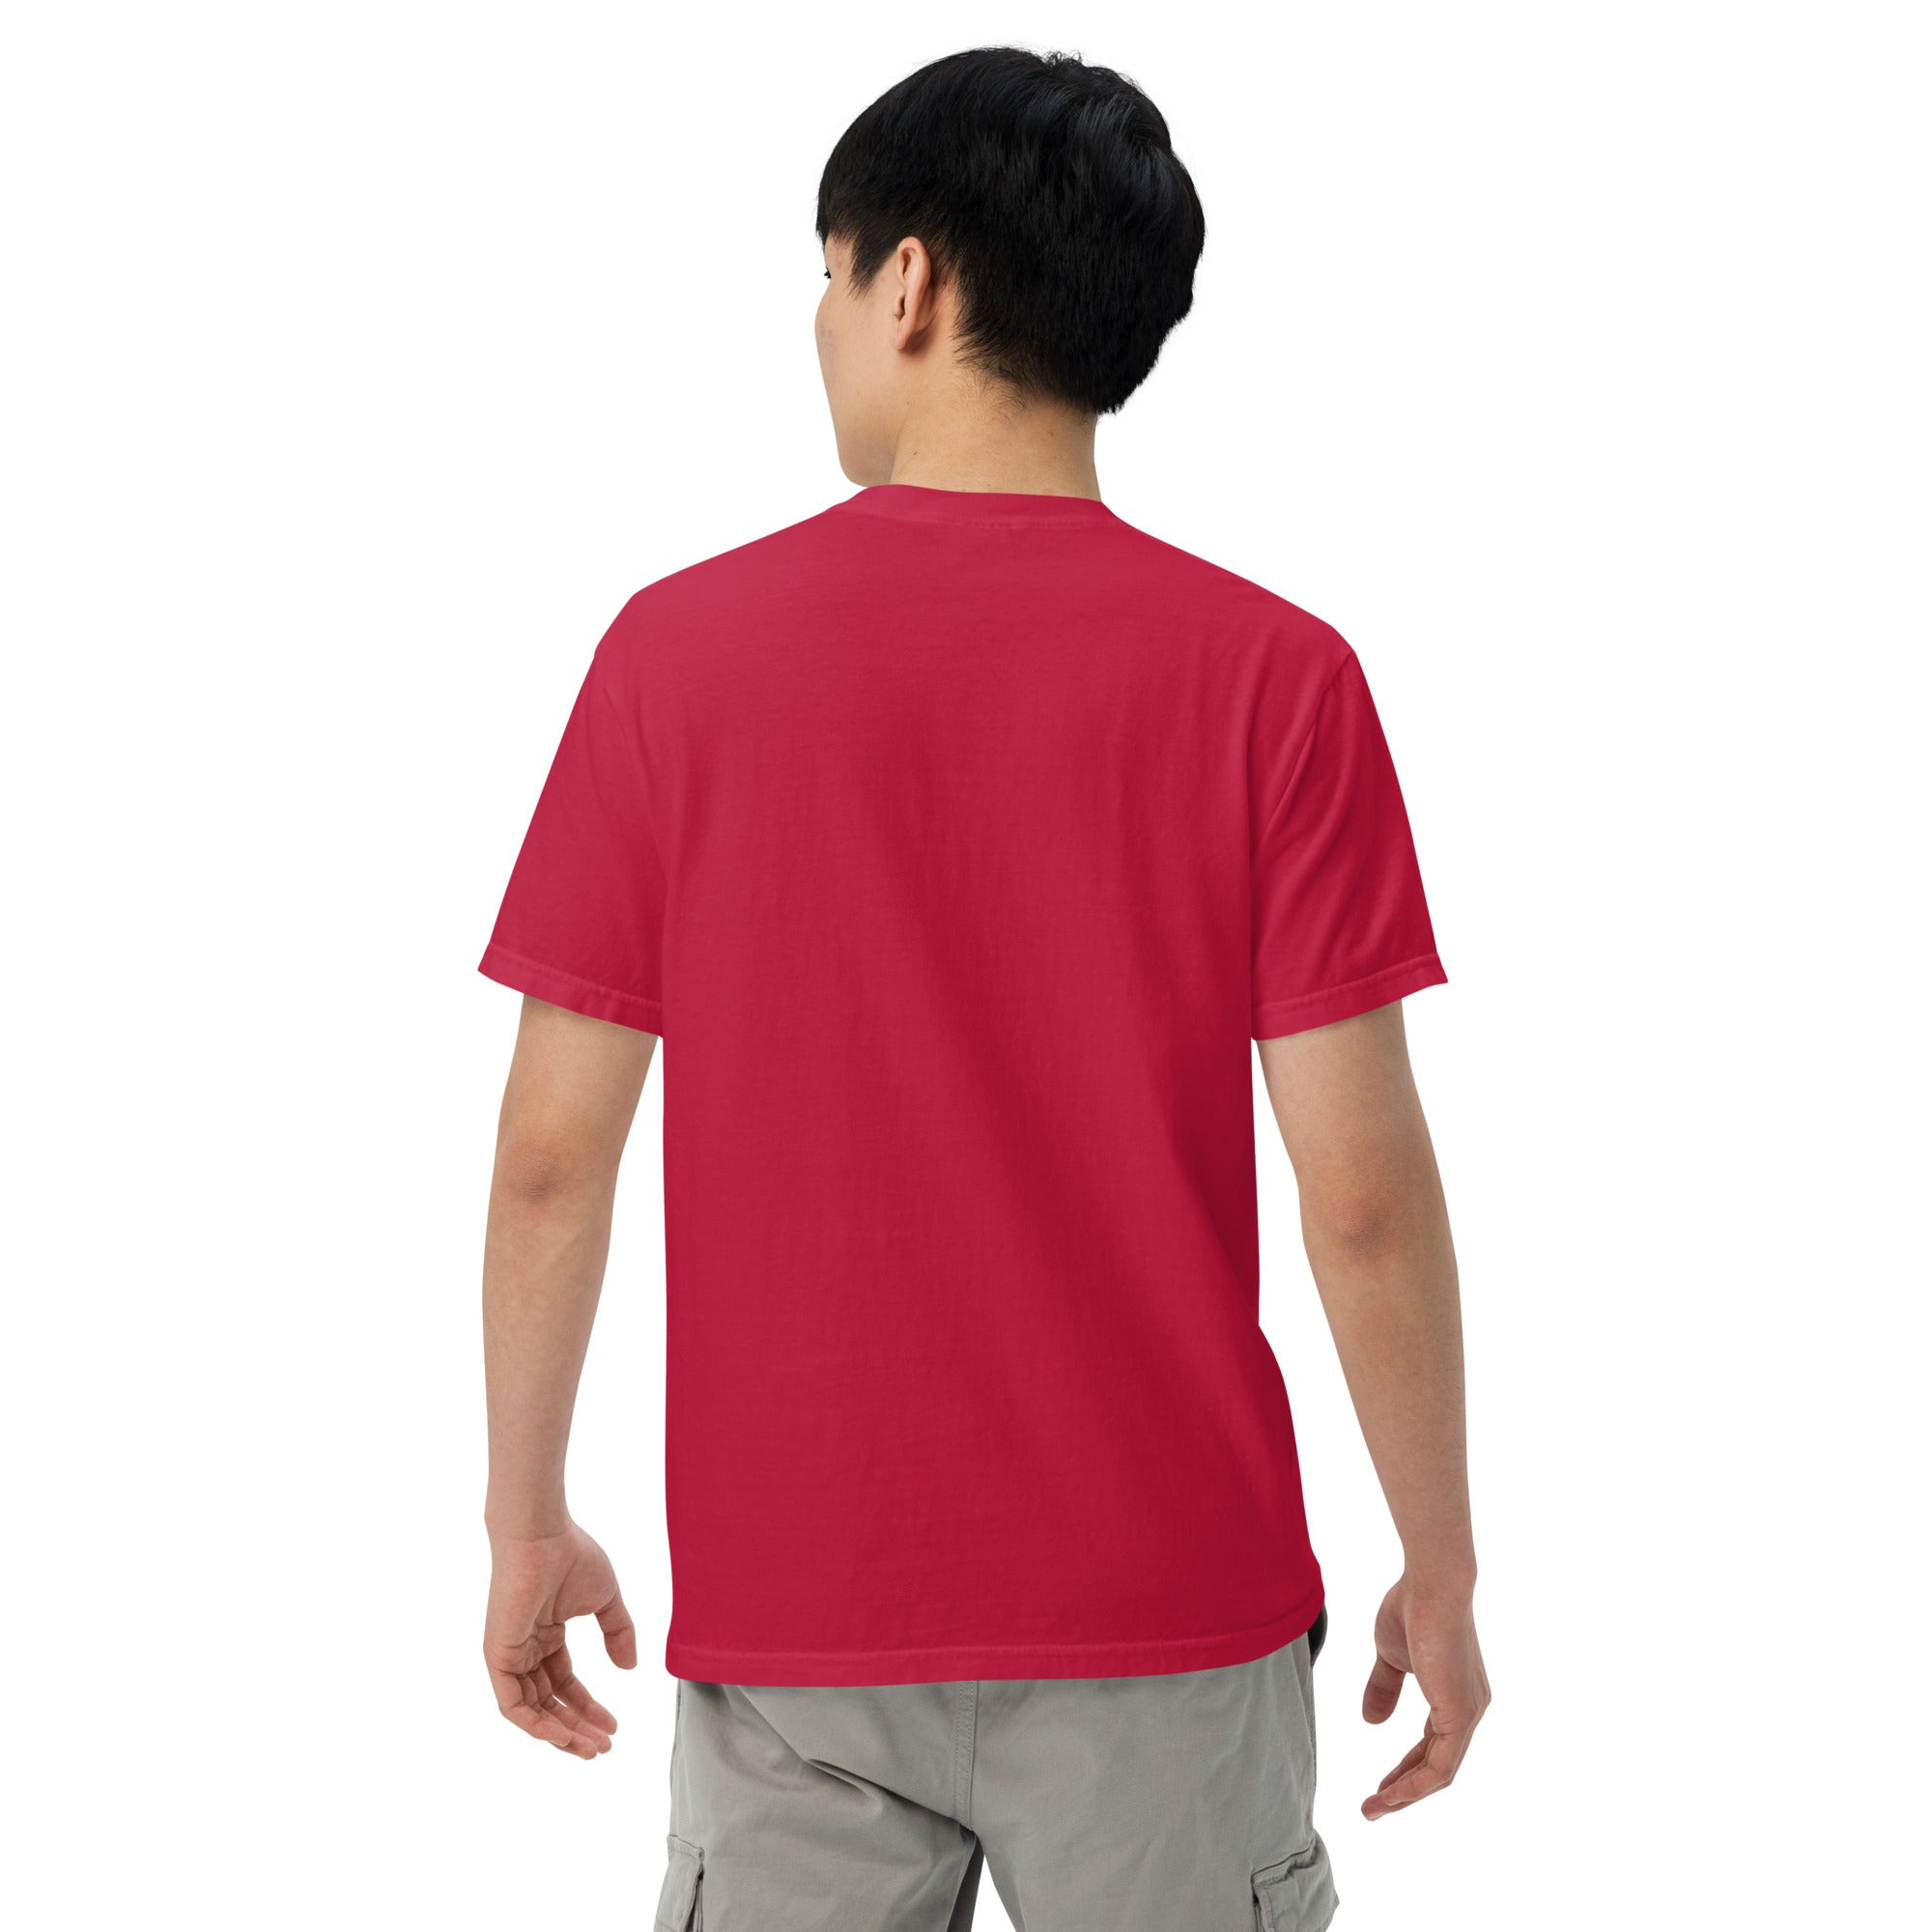 Wuhan Institute of Virology Men’s Garment-dyed Heavyweight T-shirt